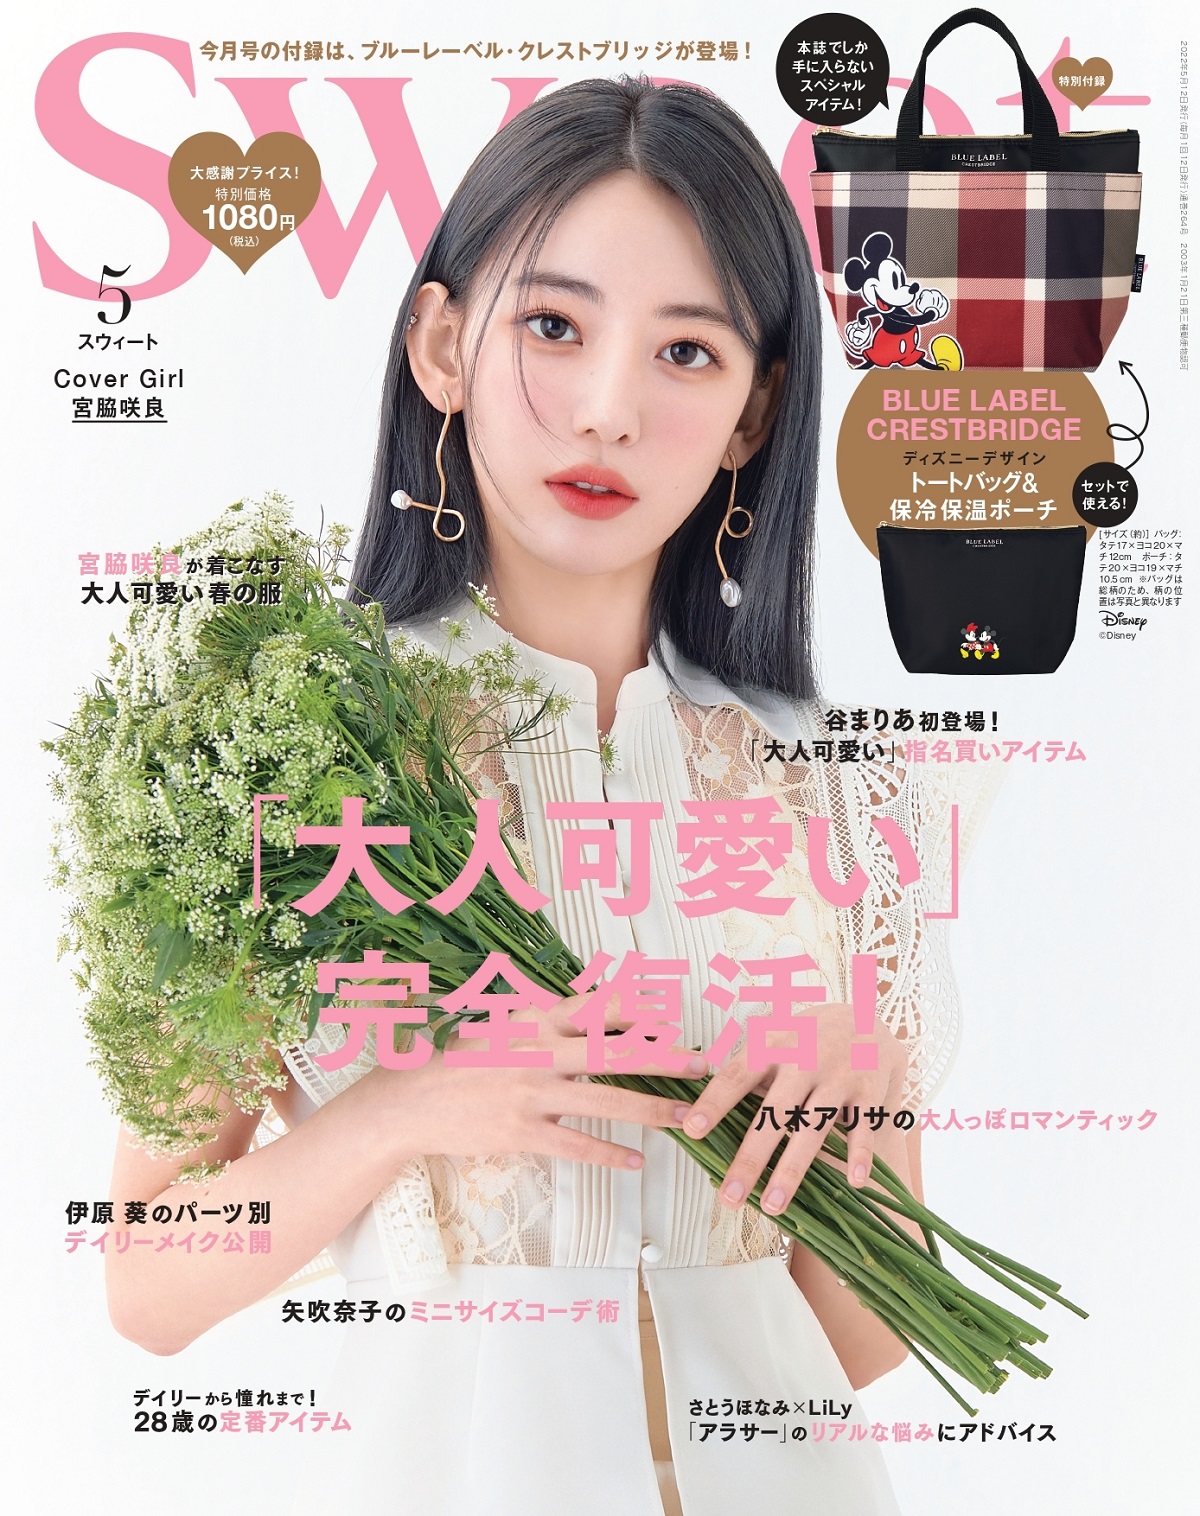 宮脇 咲良 ファッション誌 Sweet の表紙に登場 株式会社hybe Japanのプレスリリース